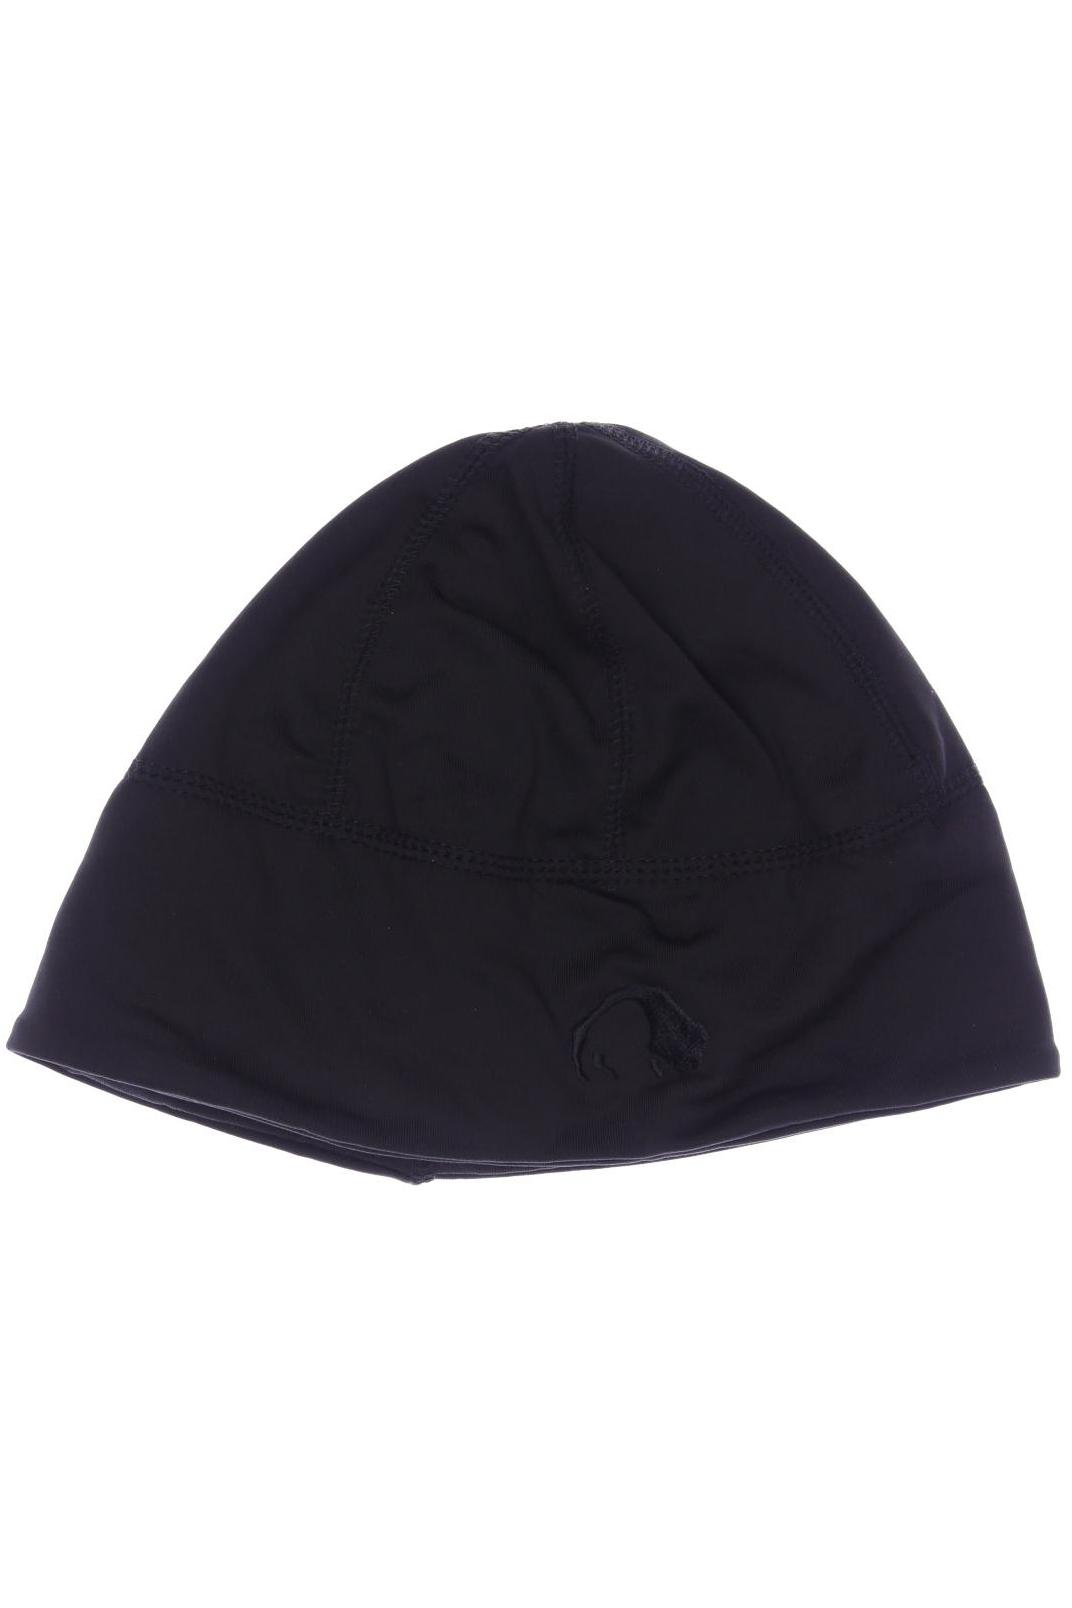 TATONKA Herren Hut/Mütze, schwarz von Tatonka